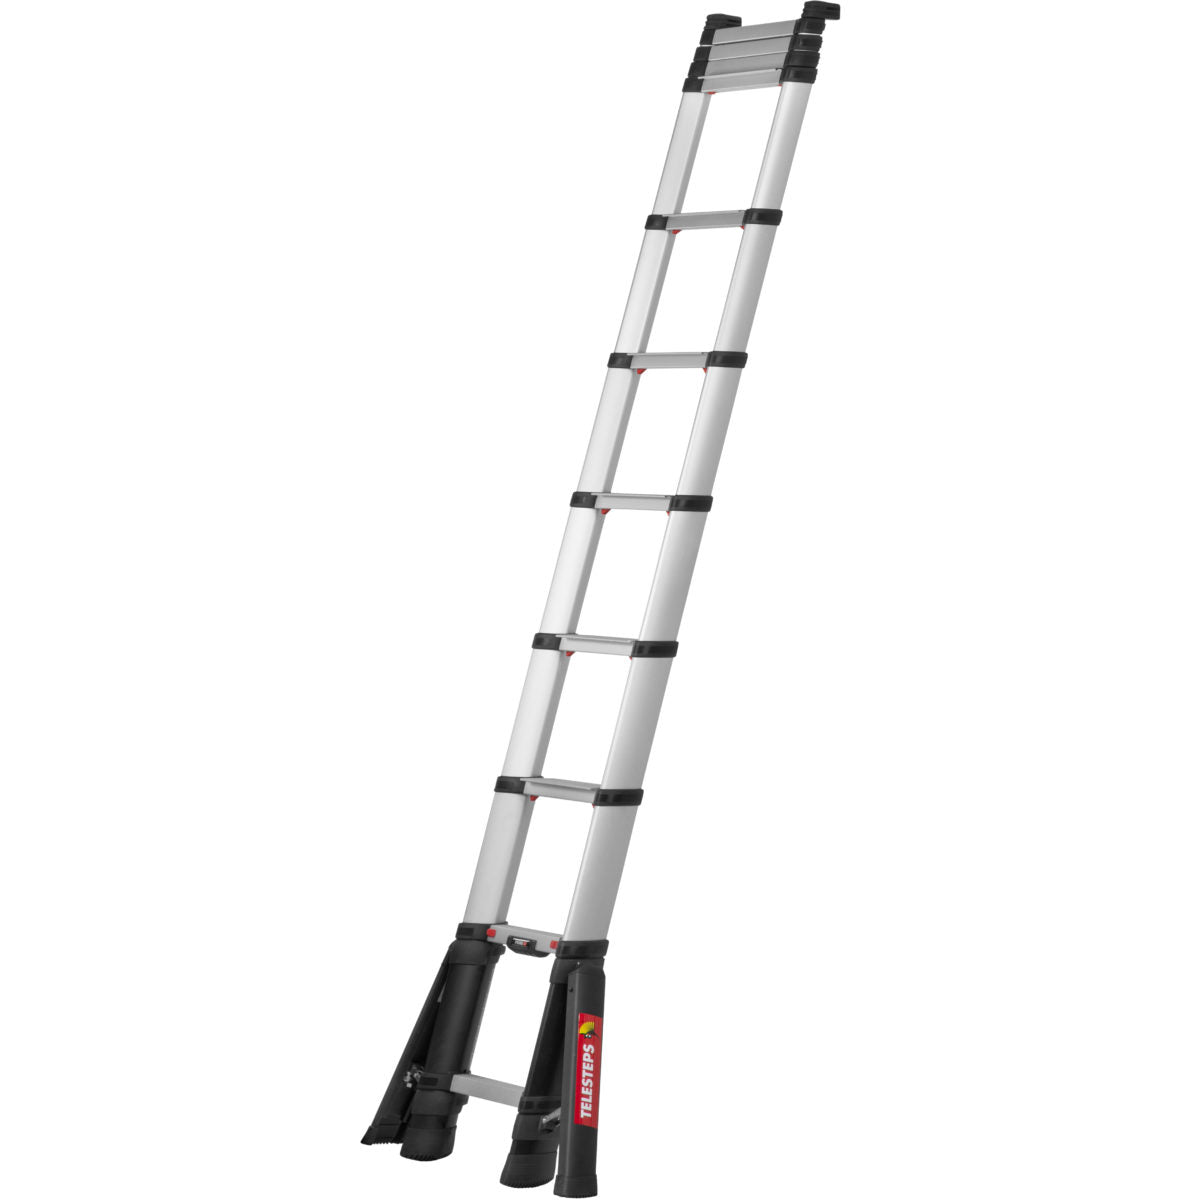 Telesteps Prime Telescopic Ladder With Stabiliser Legs - 3.5 m